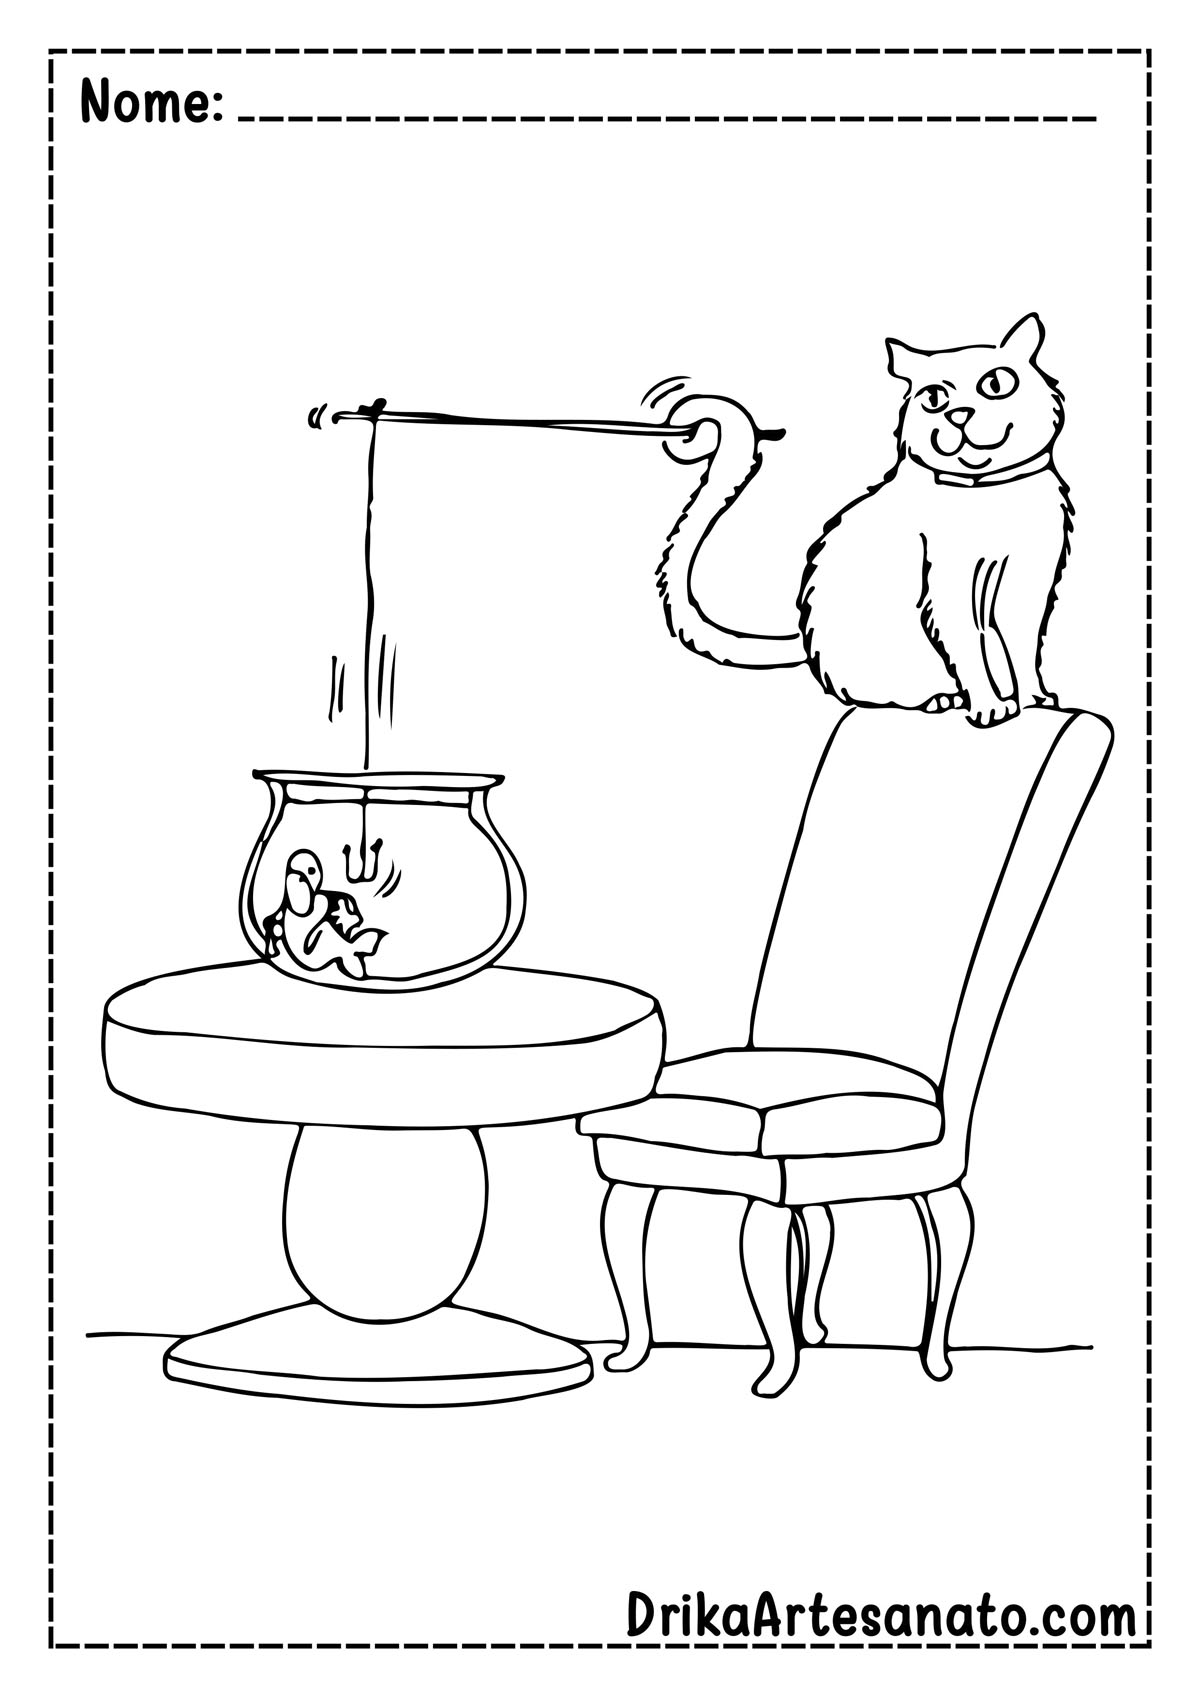 Desenho de Gato para Imprimir